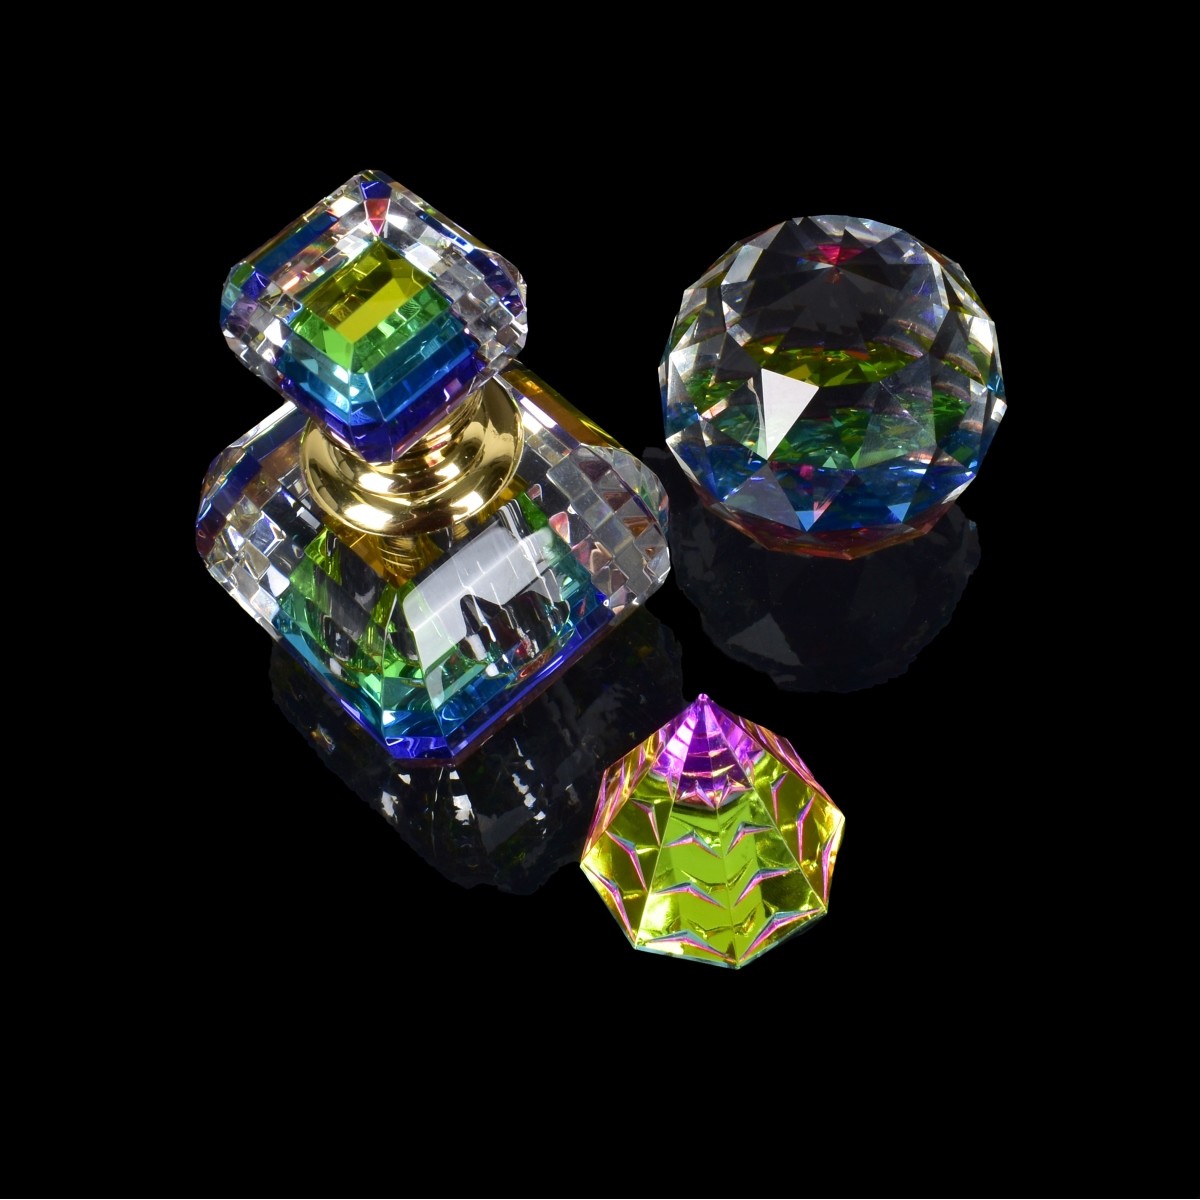 Three Swarvoski Crystal Table Items